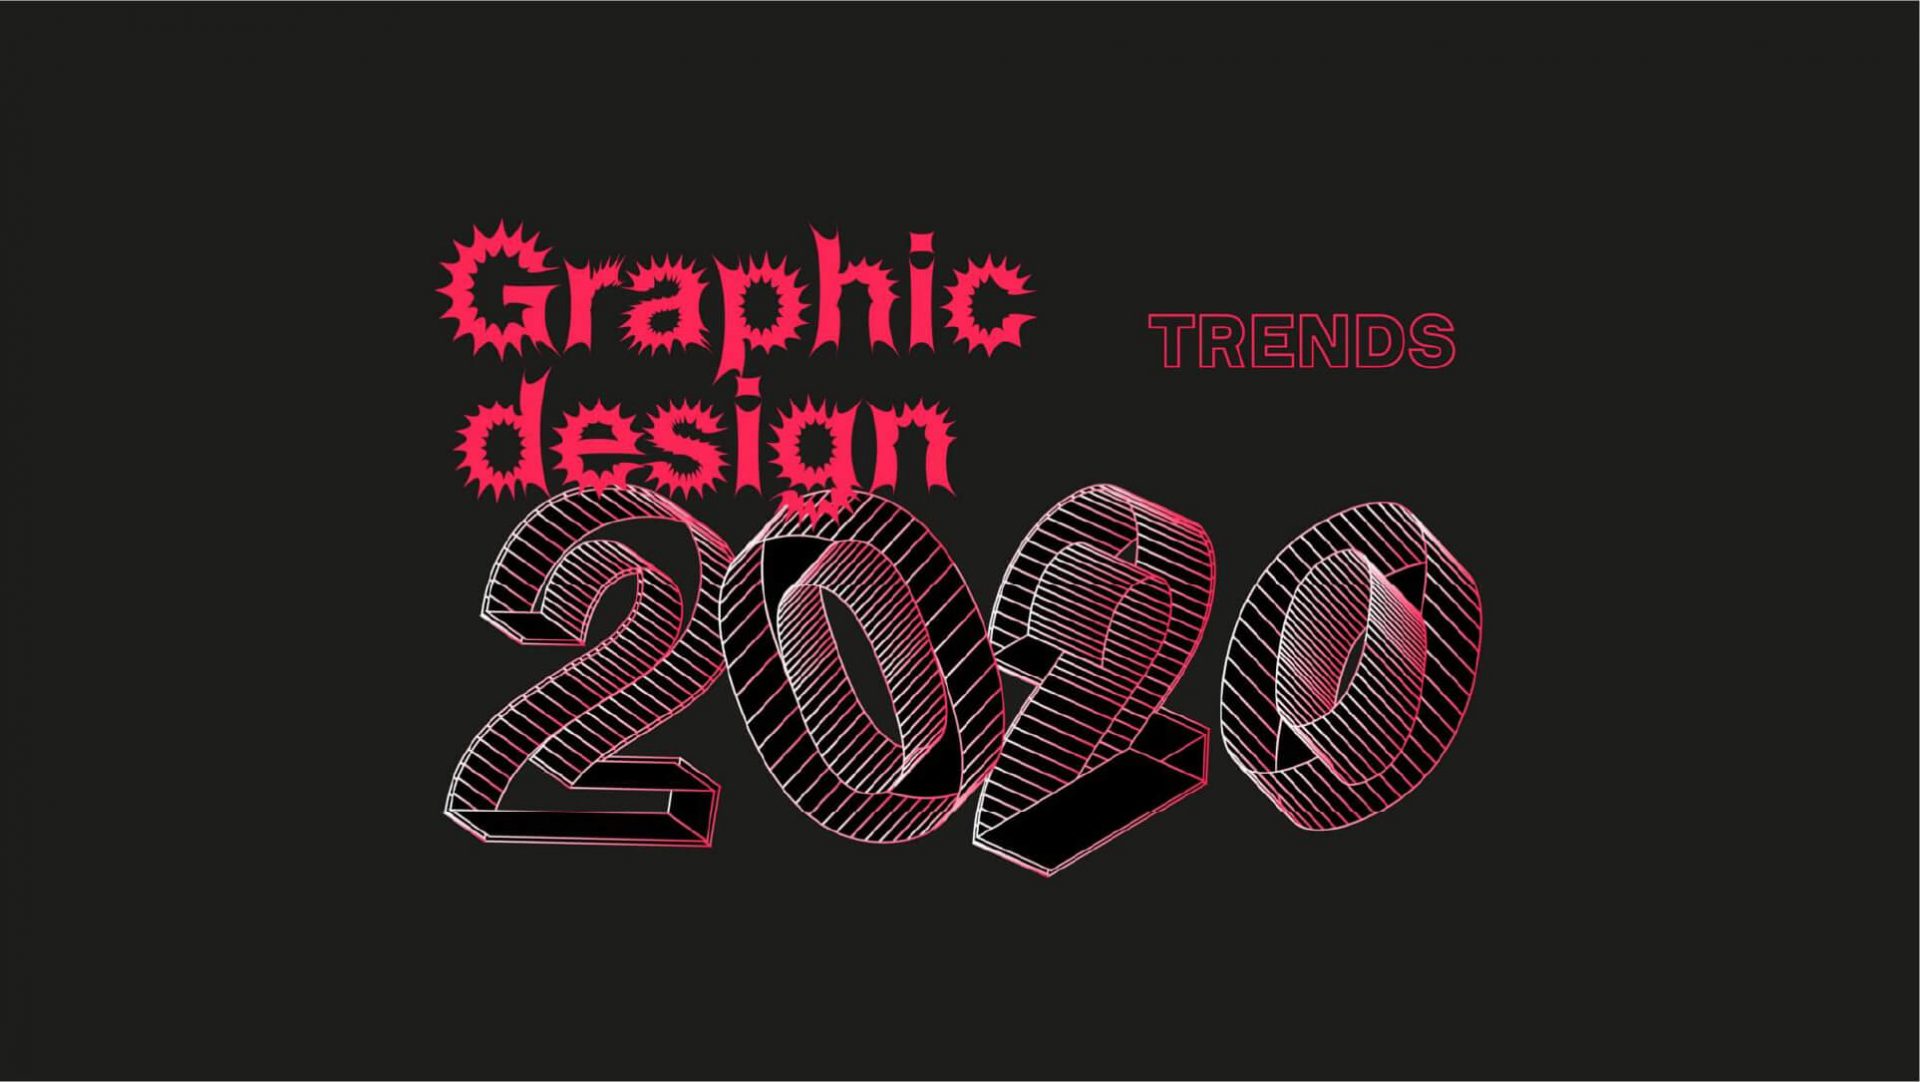 Graphic design trends 2020